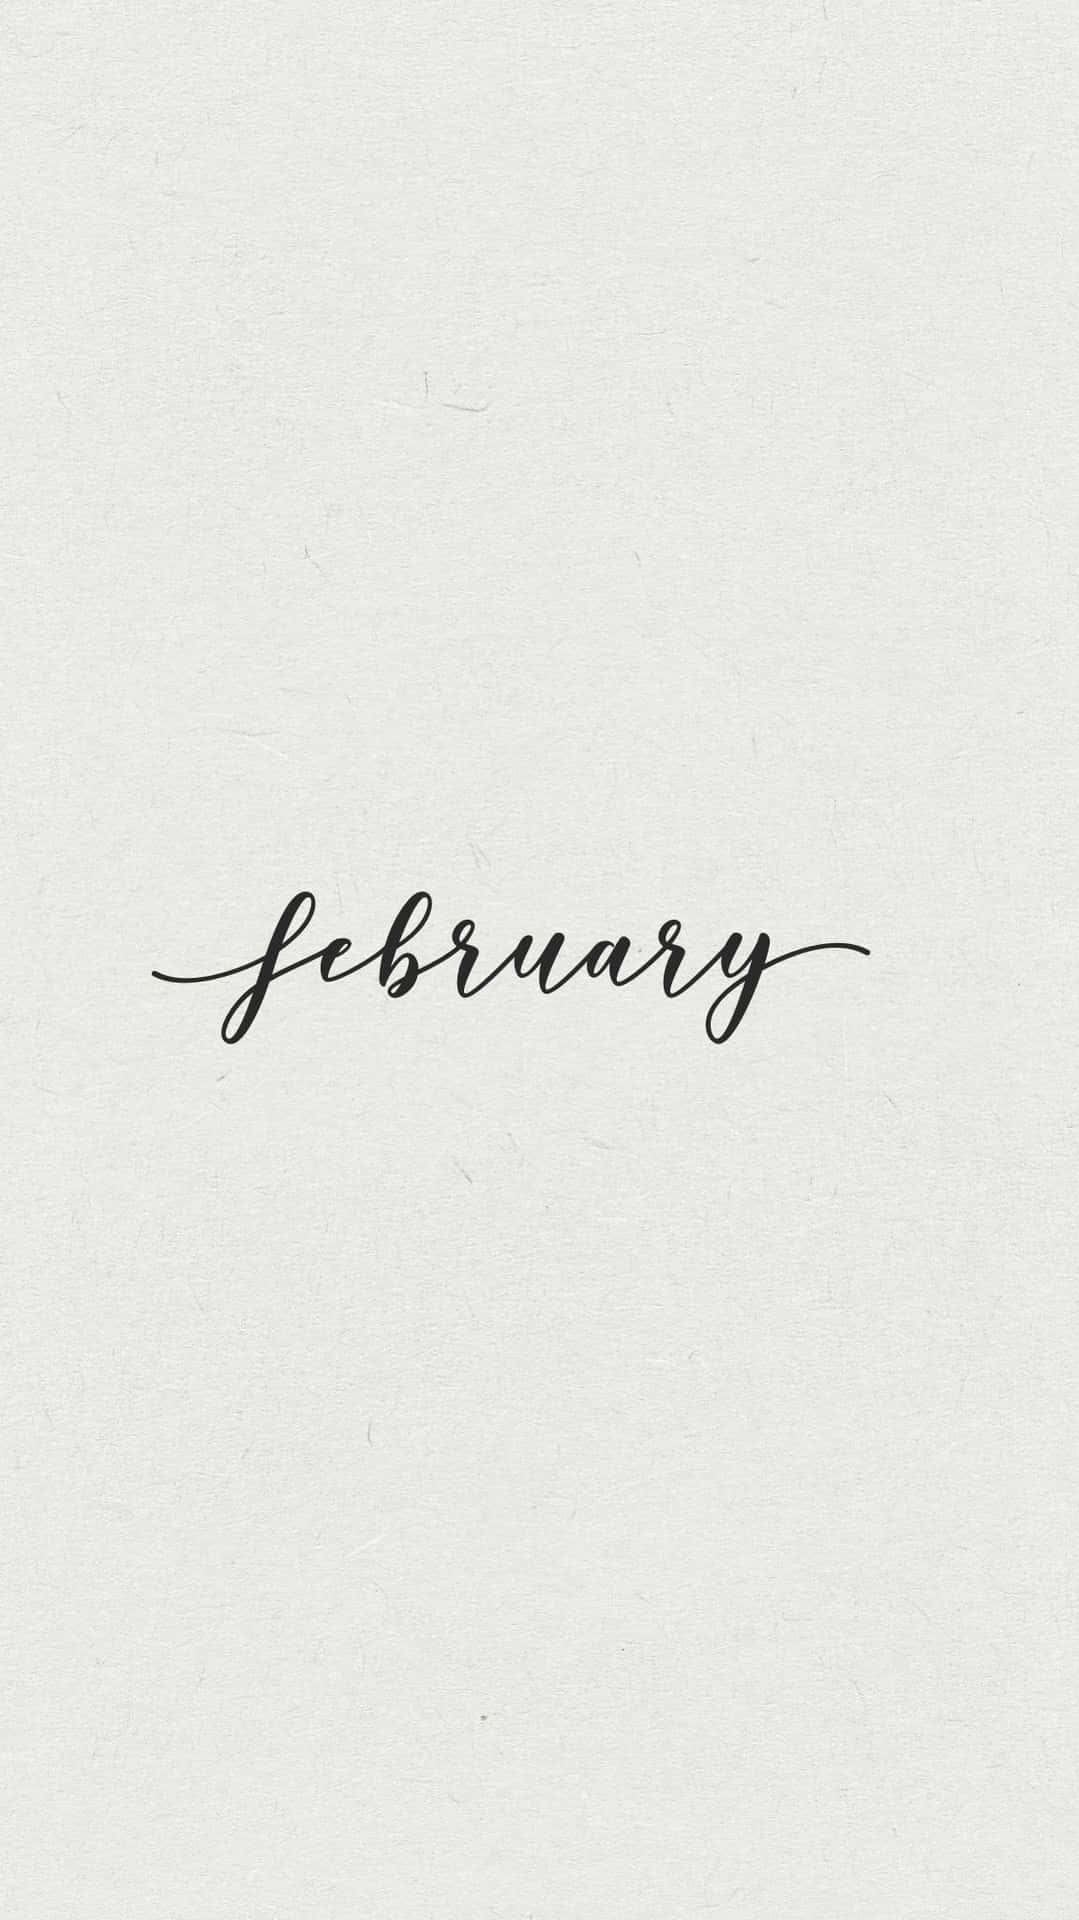 Willkommenin Den Neuen Monat Februar!